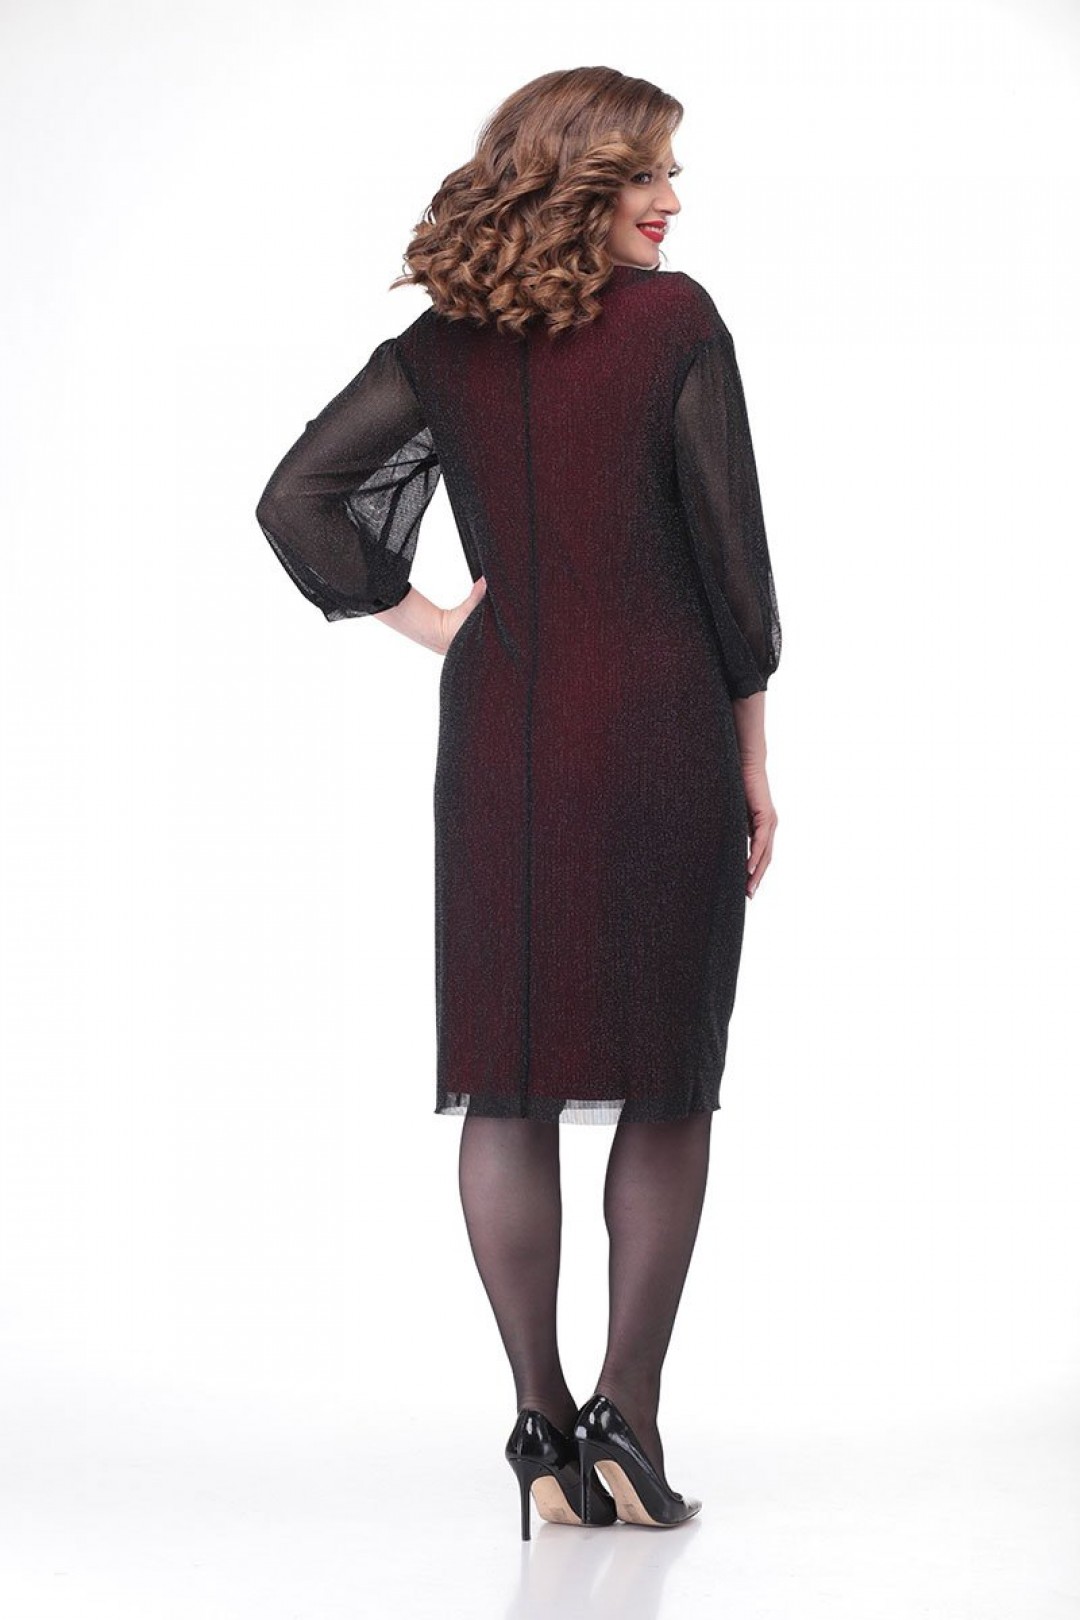 Платье Карина Делюкс В-366 черно-бордовый